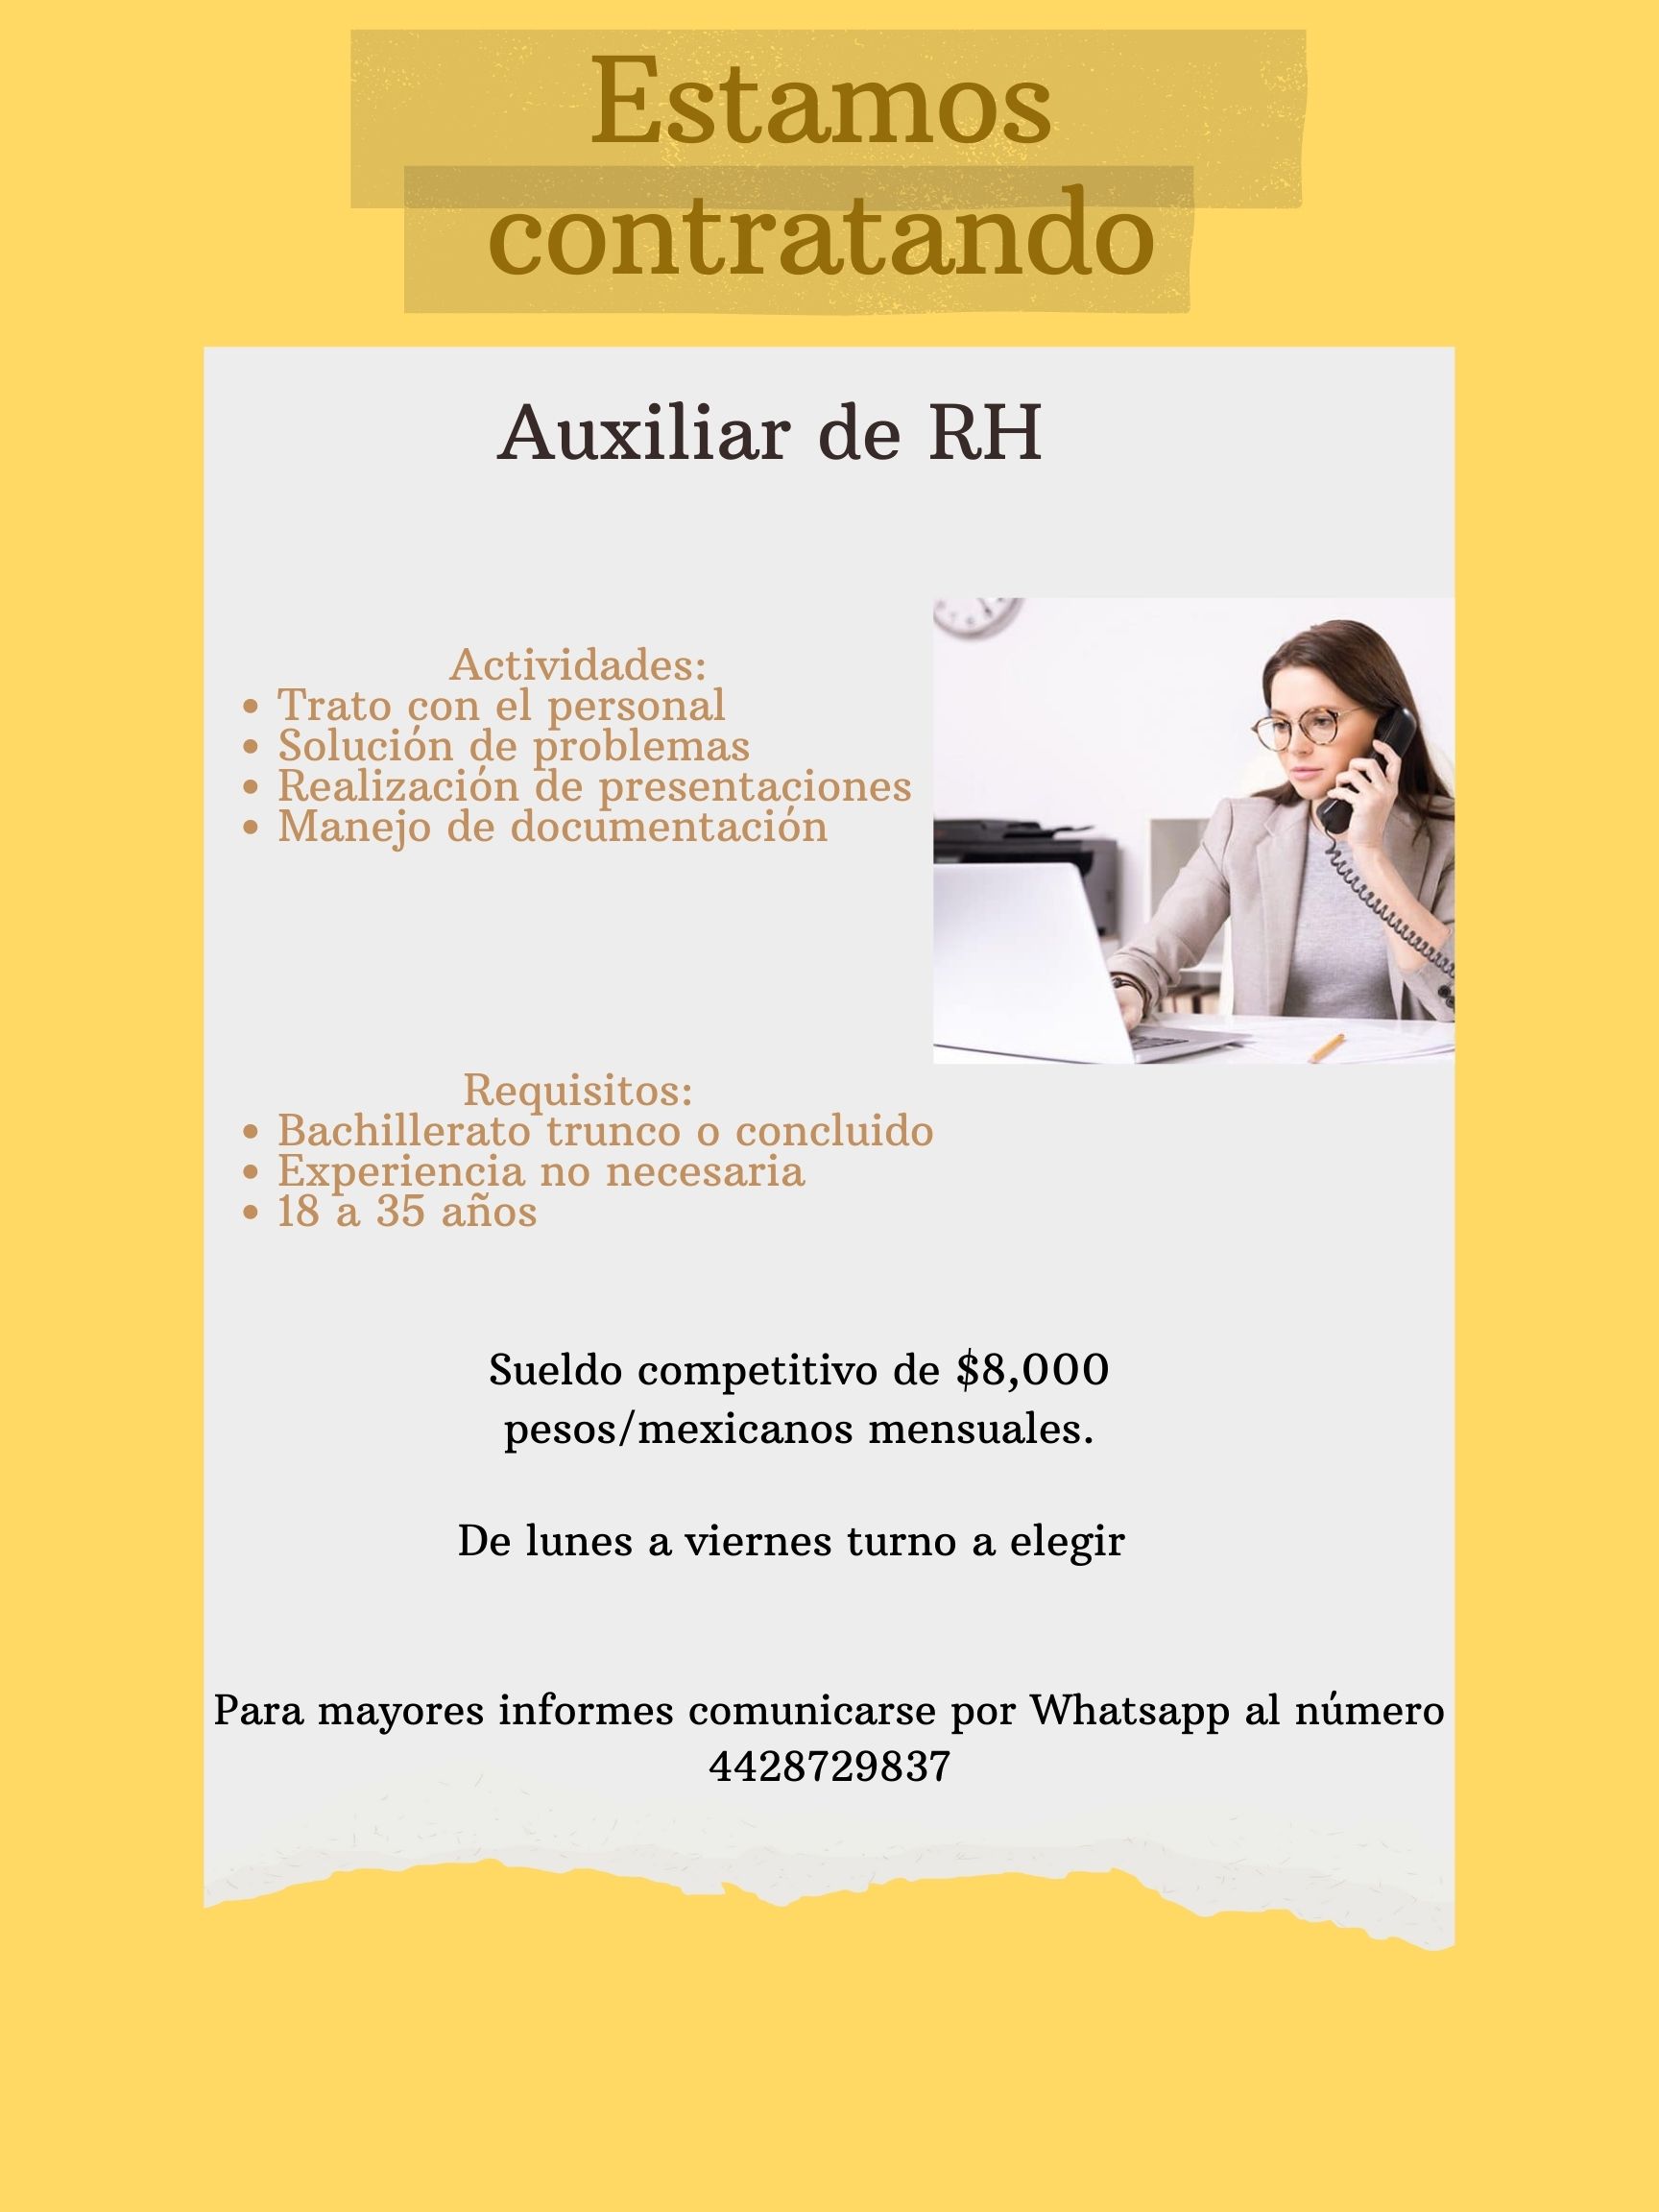 Estamos
contratando

Auxiliar de RH

 

Sueldo competitivo de $8,000
pesos/mexicanos mensuales.

De lunes a viernes turno a elegir

Para mayores informes comunicarse por Whatsapp al numero
4428729837